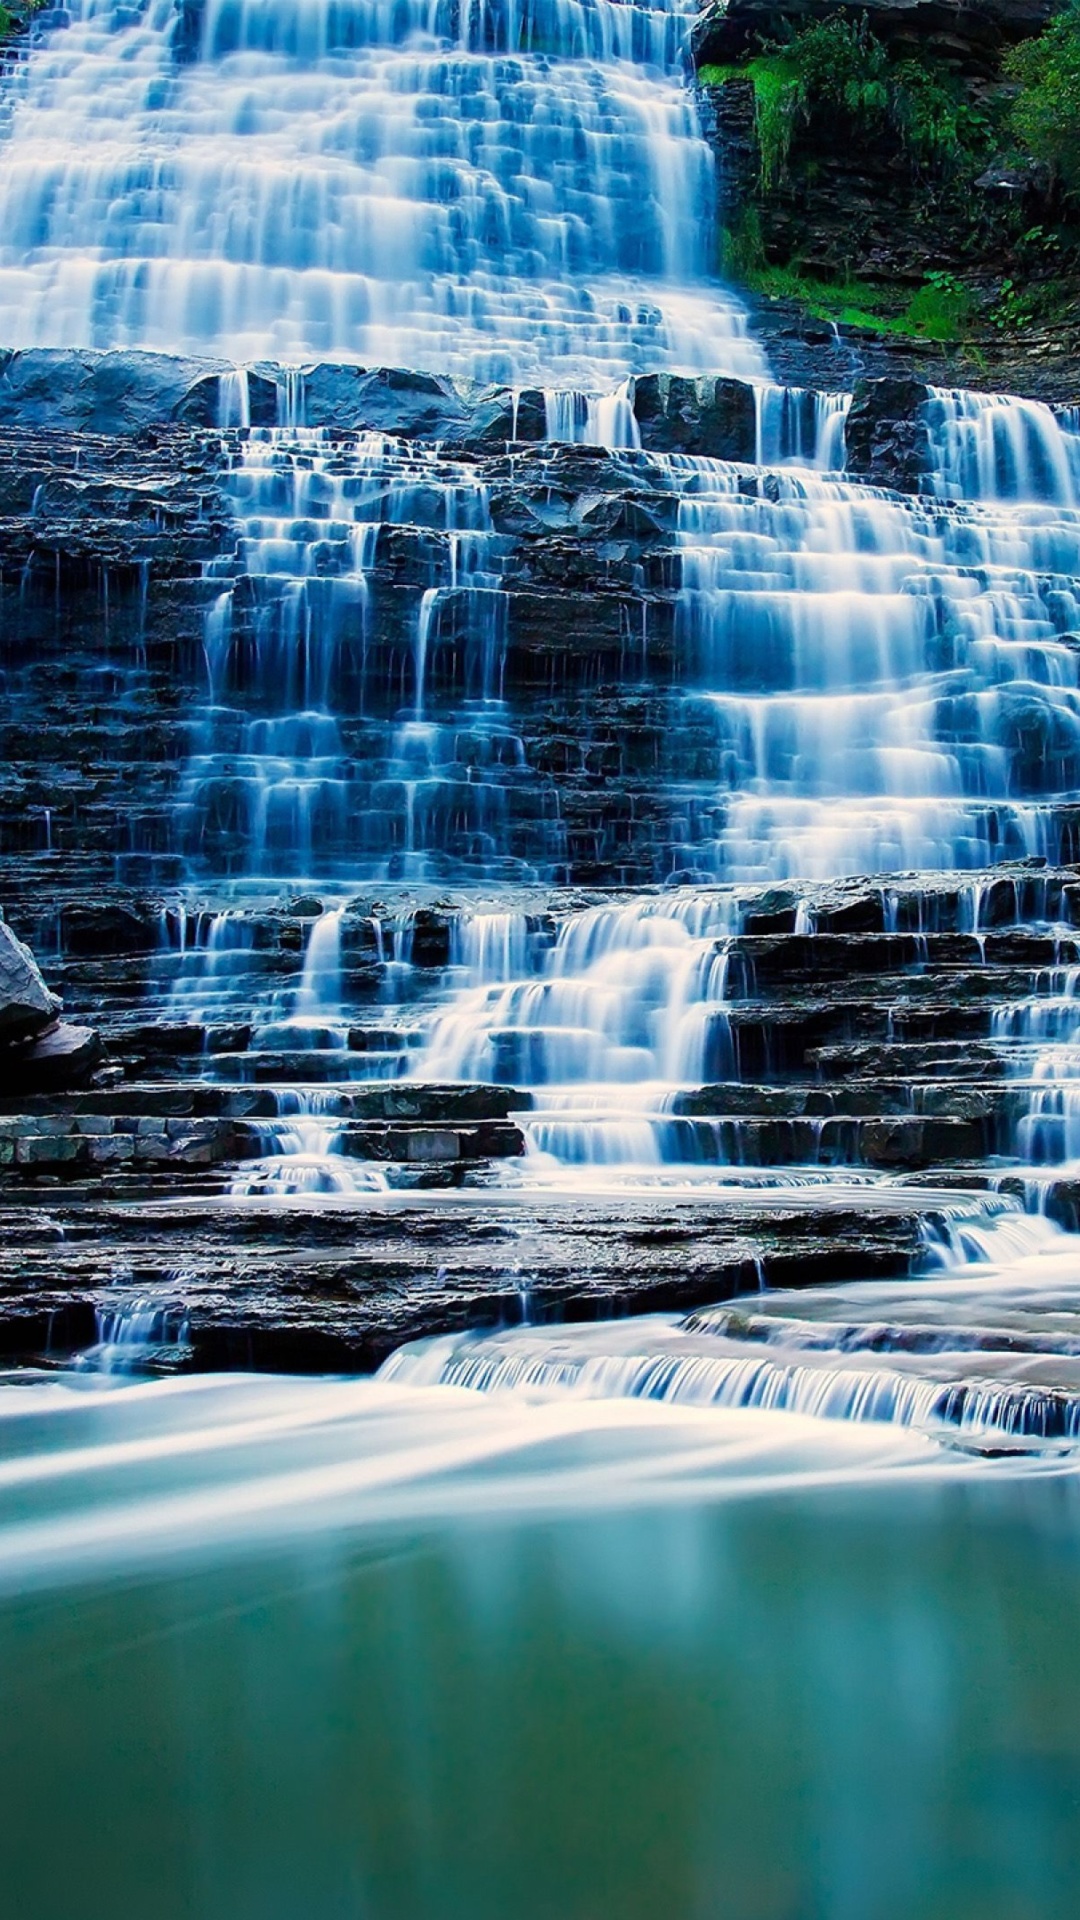 Das Albion Falls cascade waterfall in Hamilton, Ontario, Canada Wallpaper 1080x1920